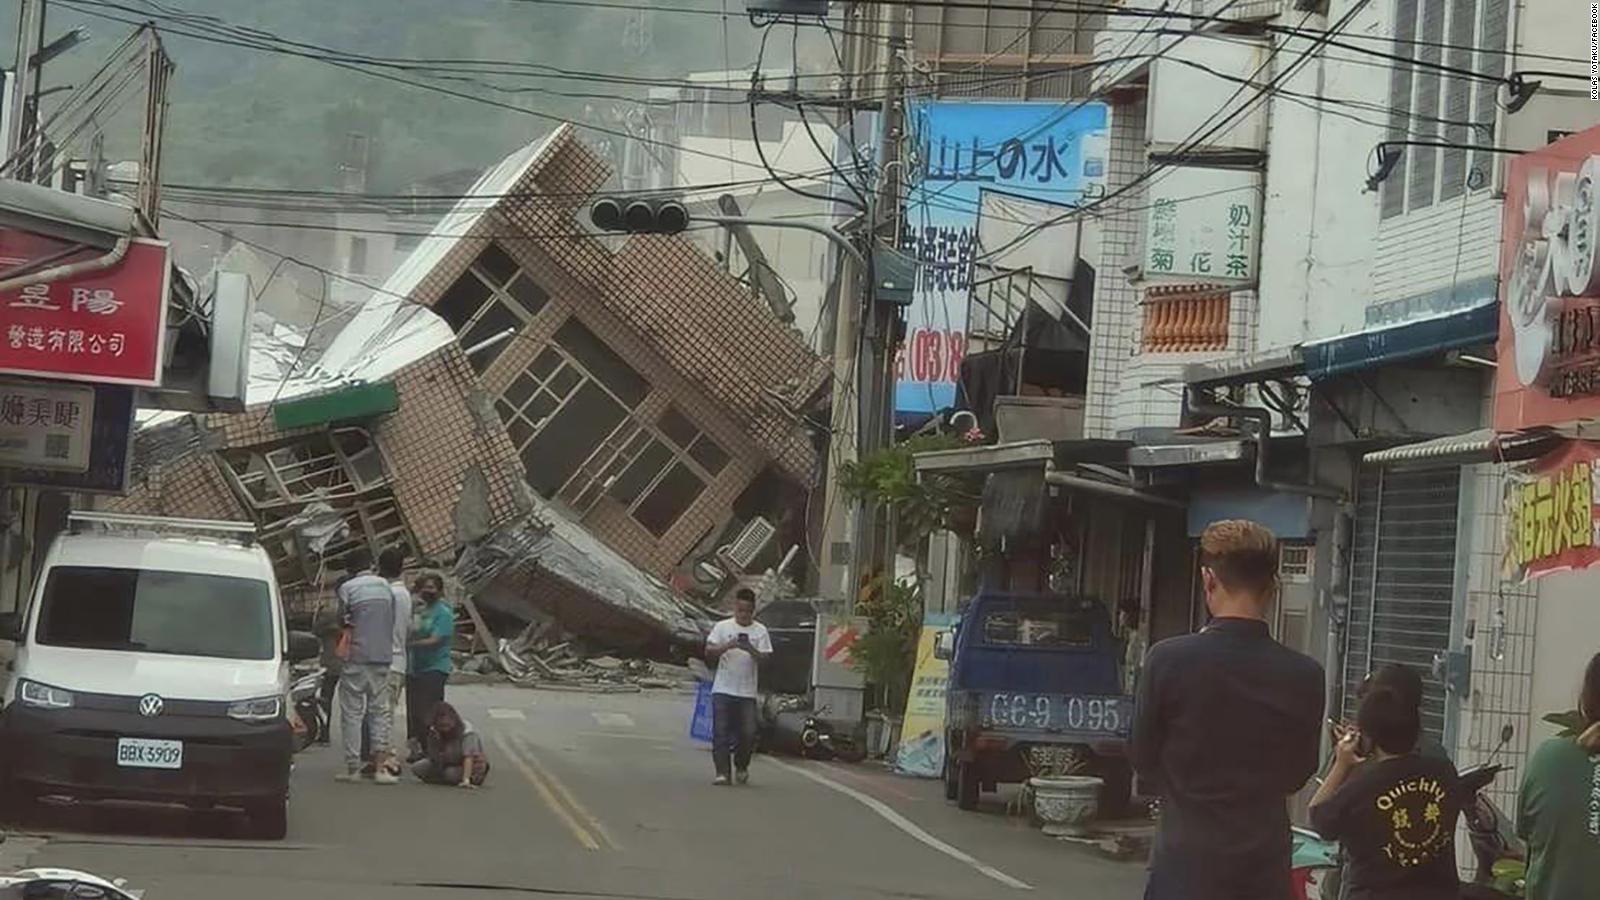 Gempa berkekuatan 6,9 di Taiwan telah memicu peringatan tsunami